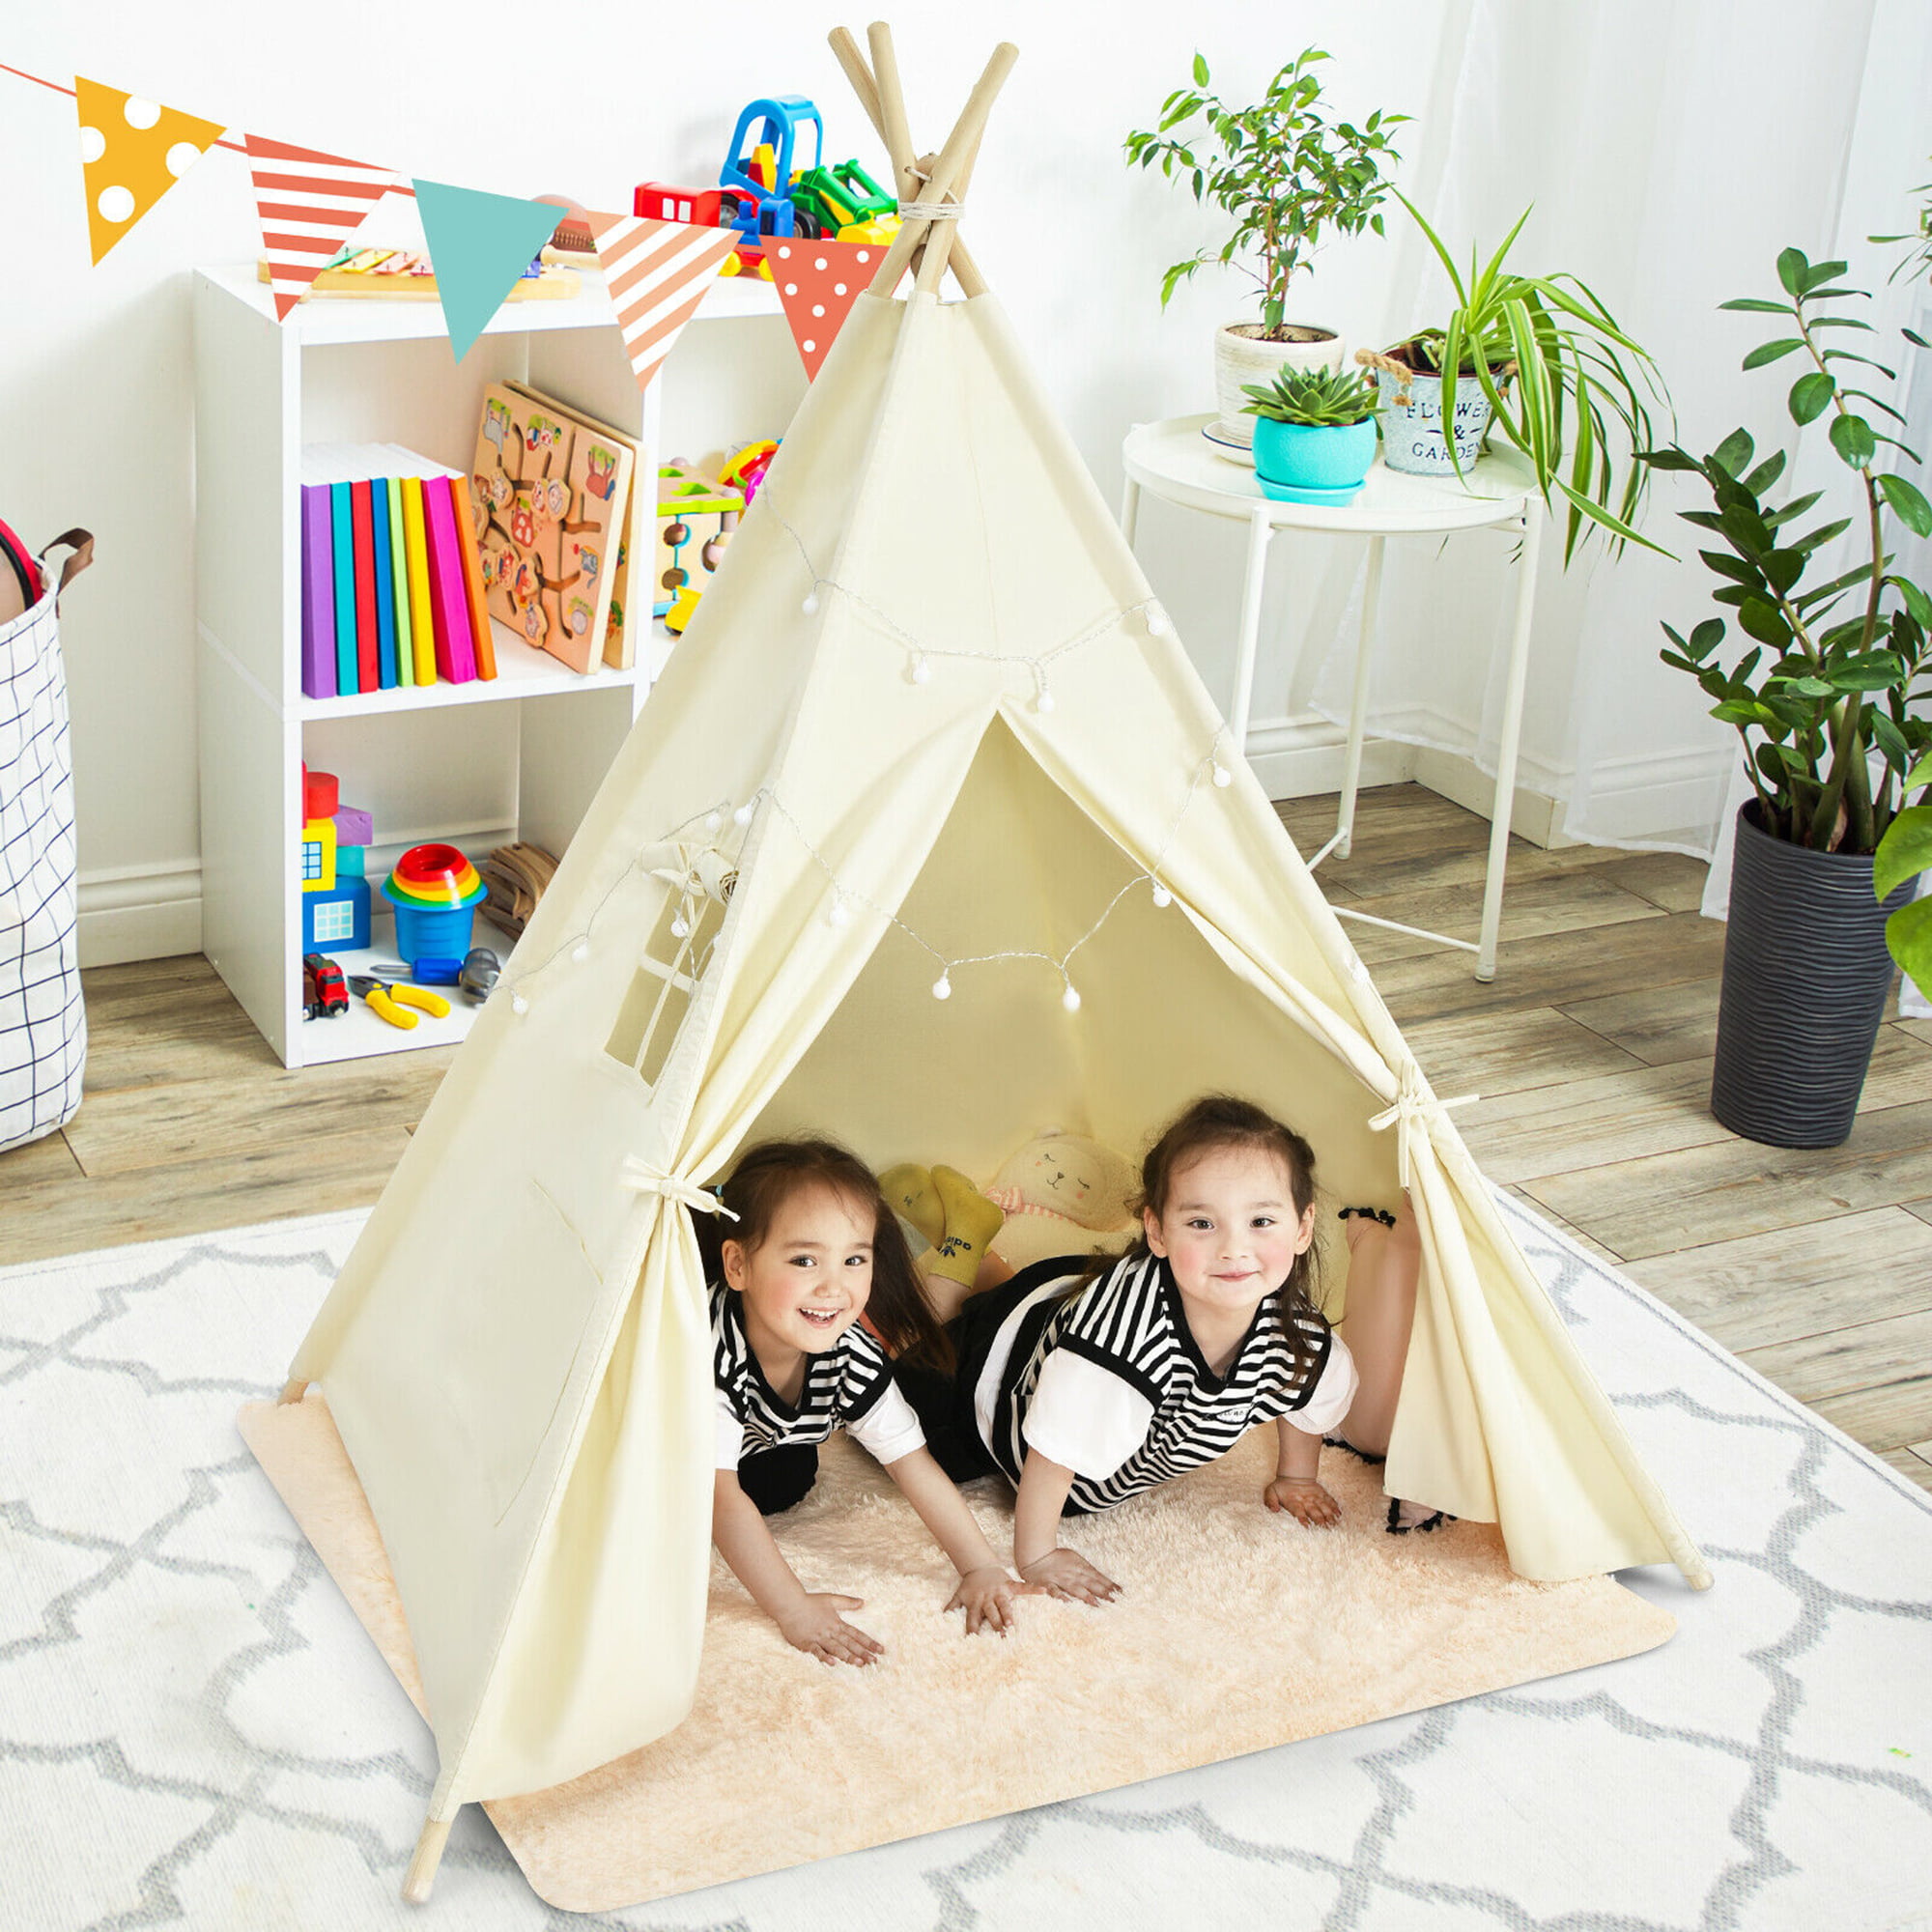 Kids Children Teepee Tent Indian Themed Playhouse Indoor Outdoor Garden Toys 